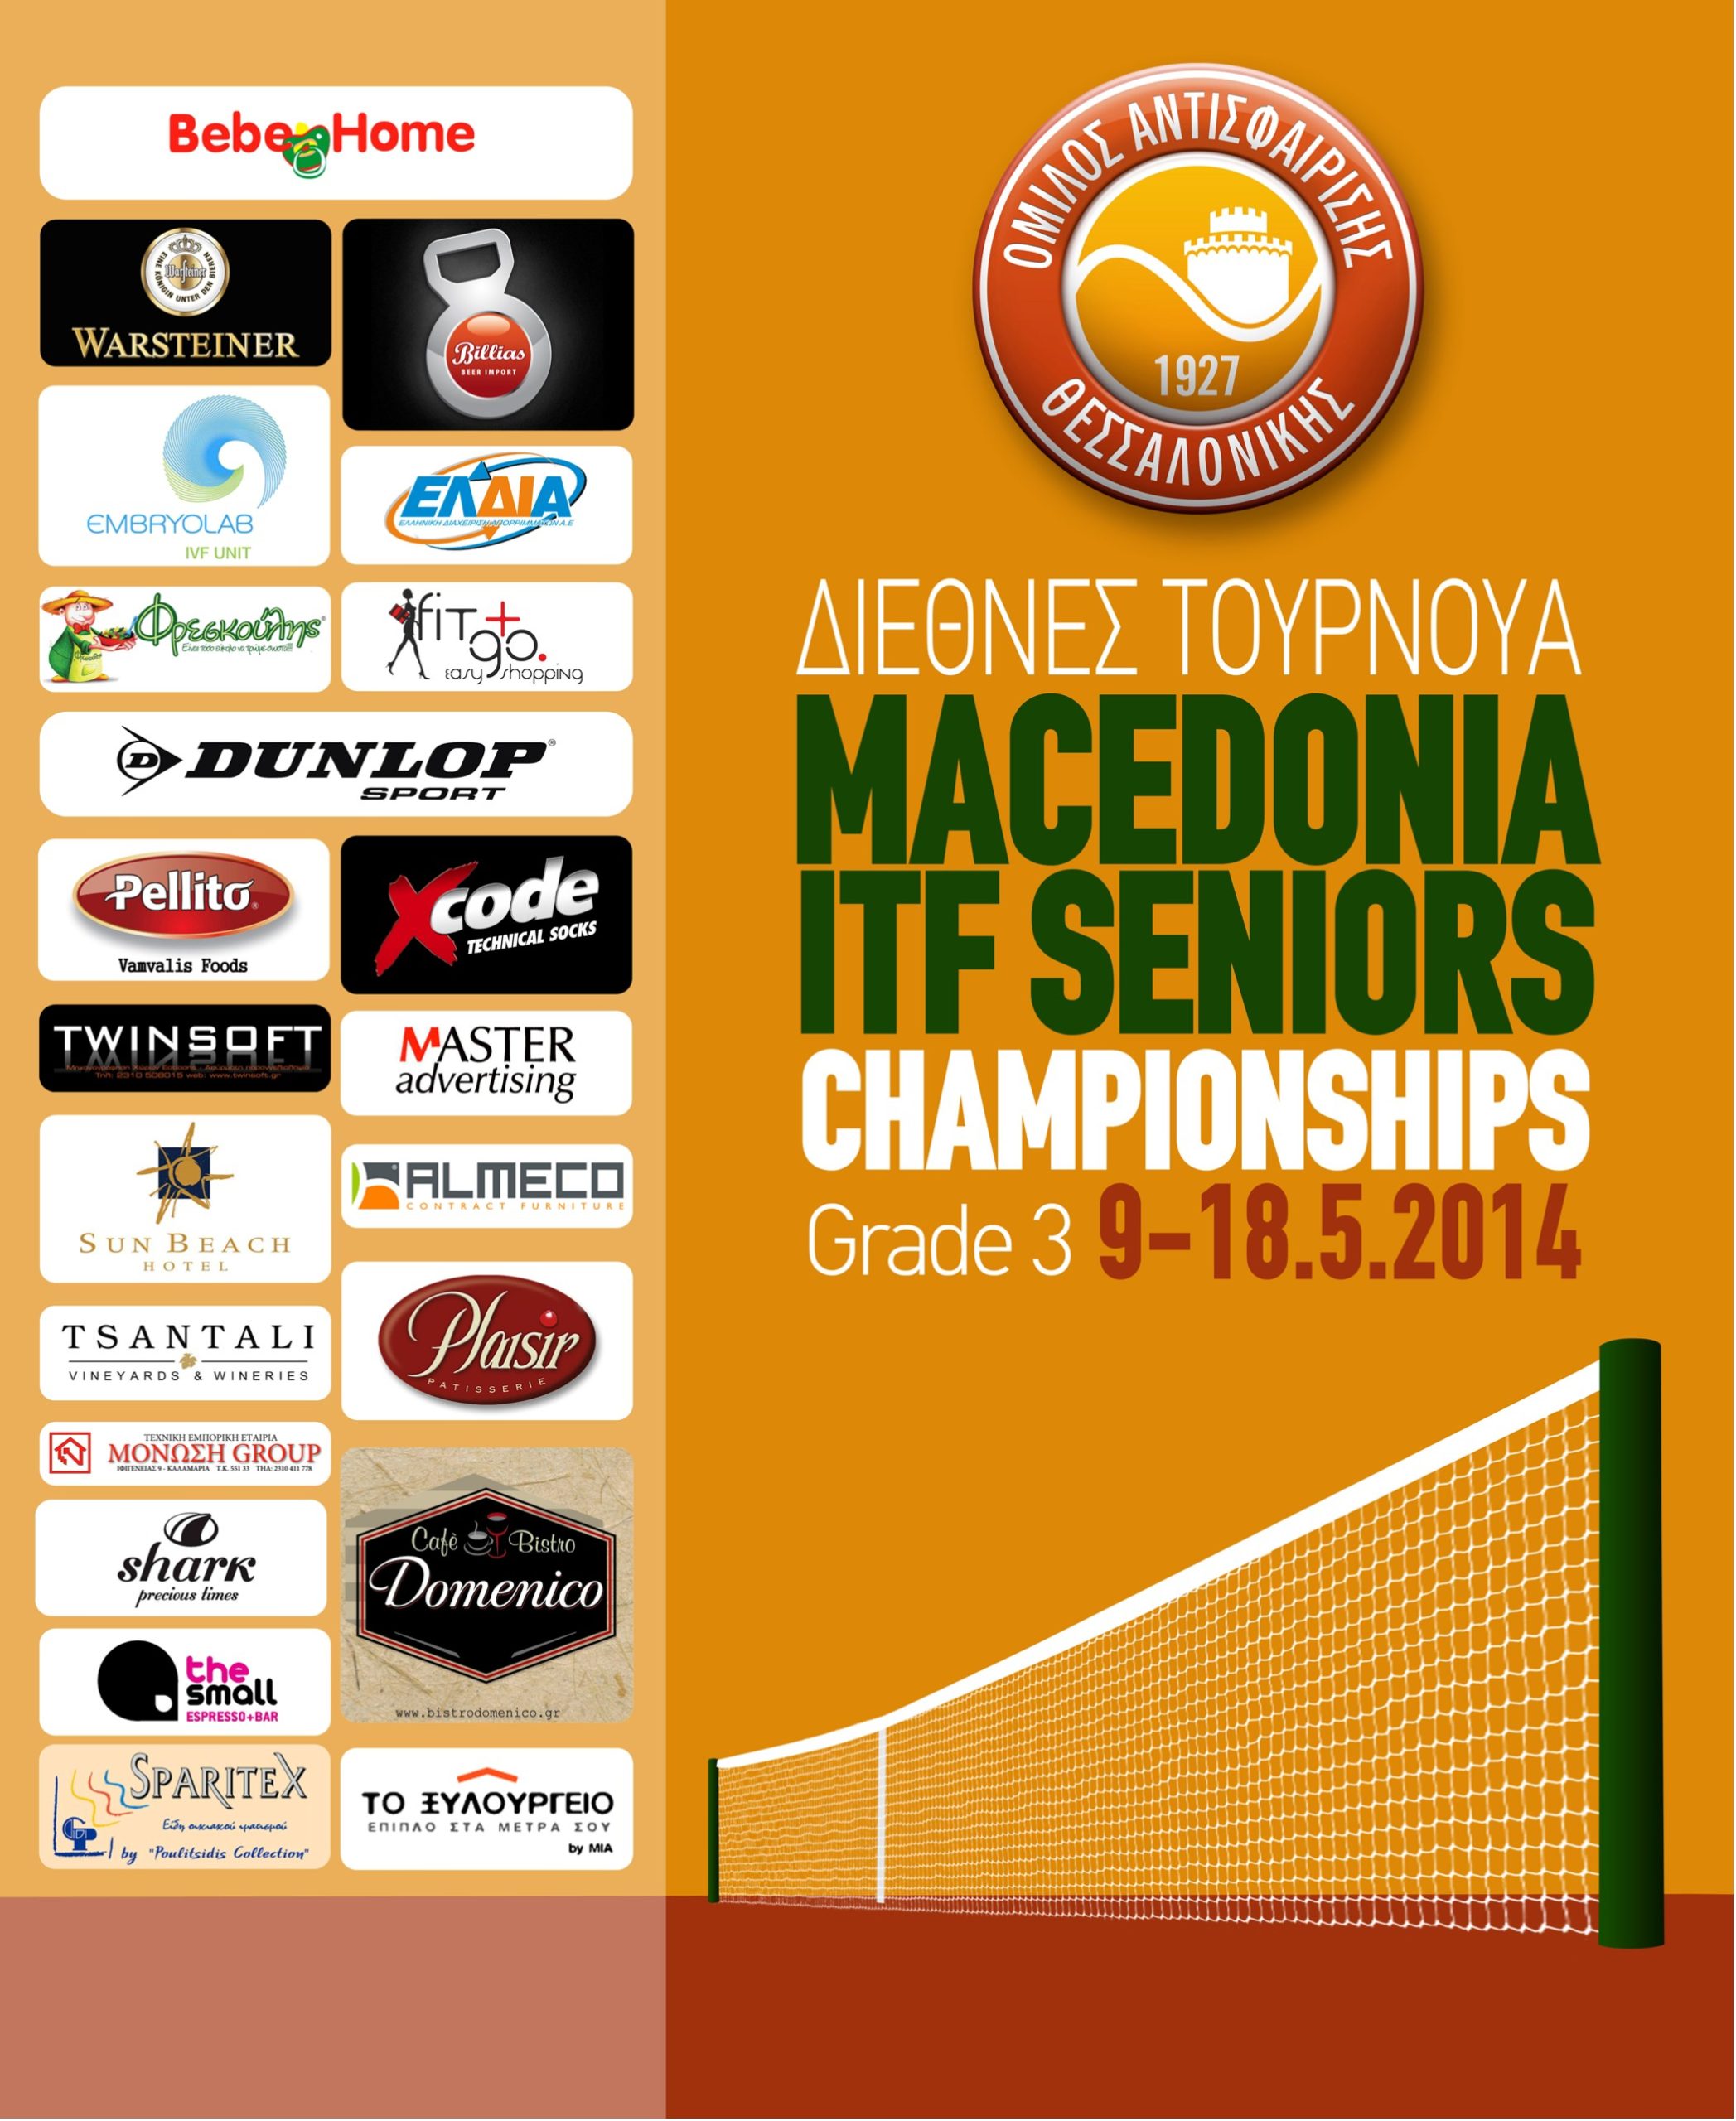 MACEDONIA 2014